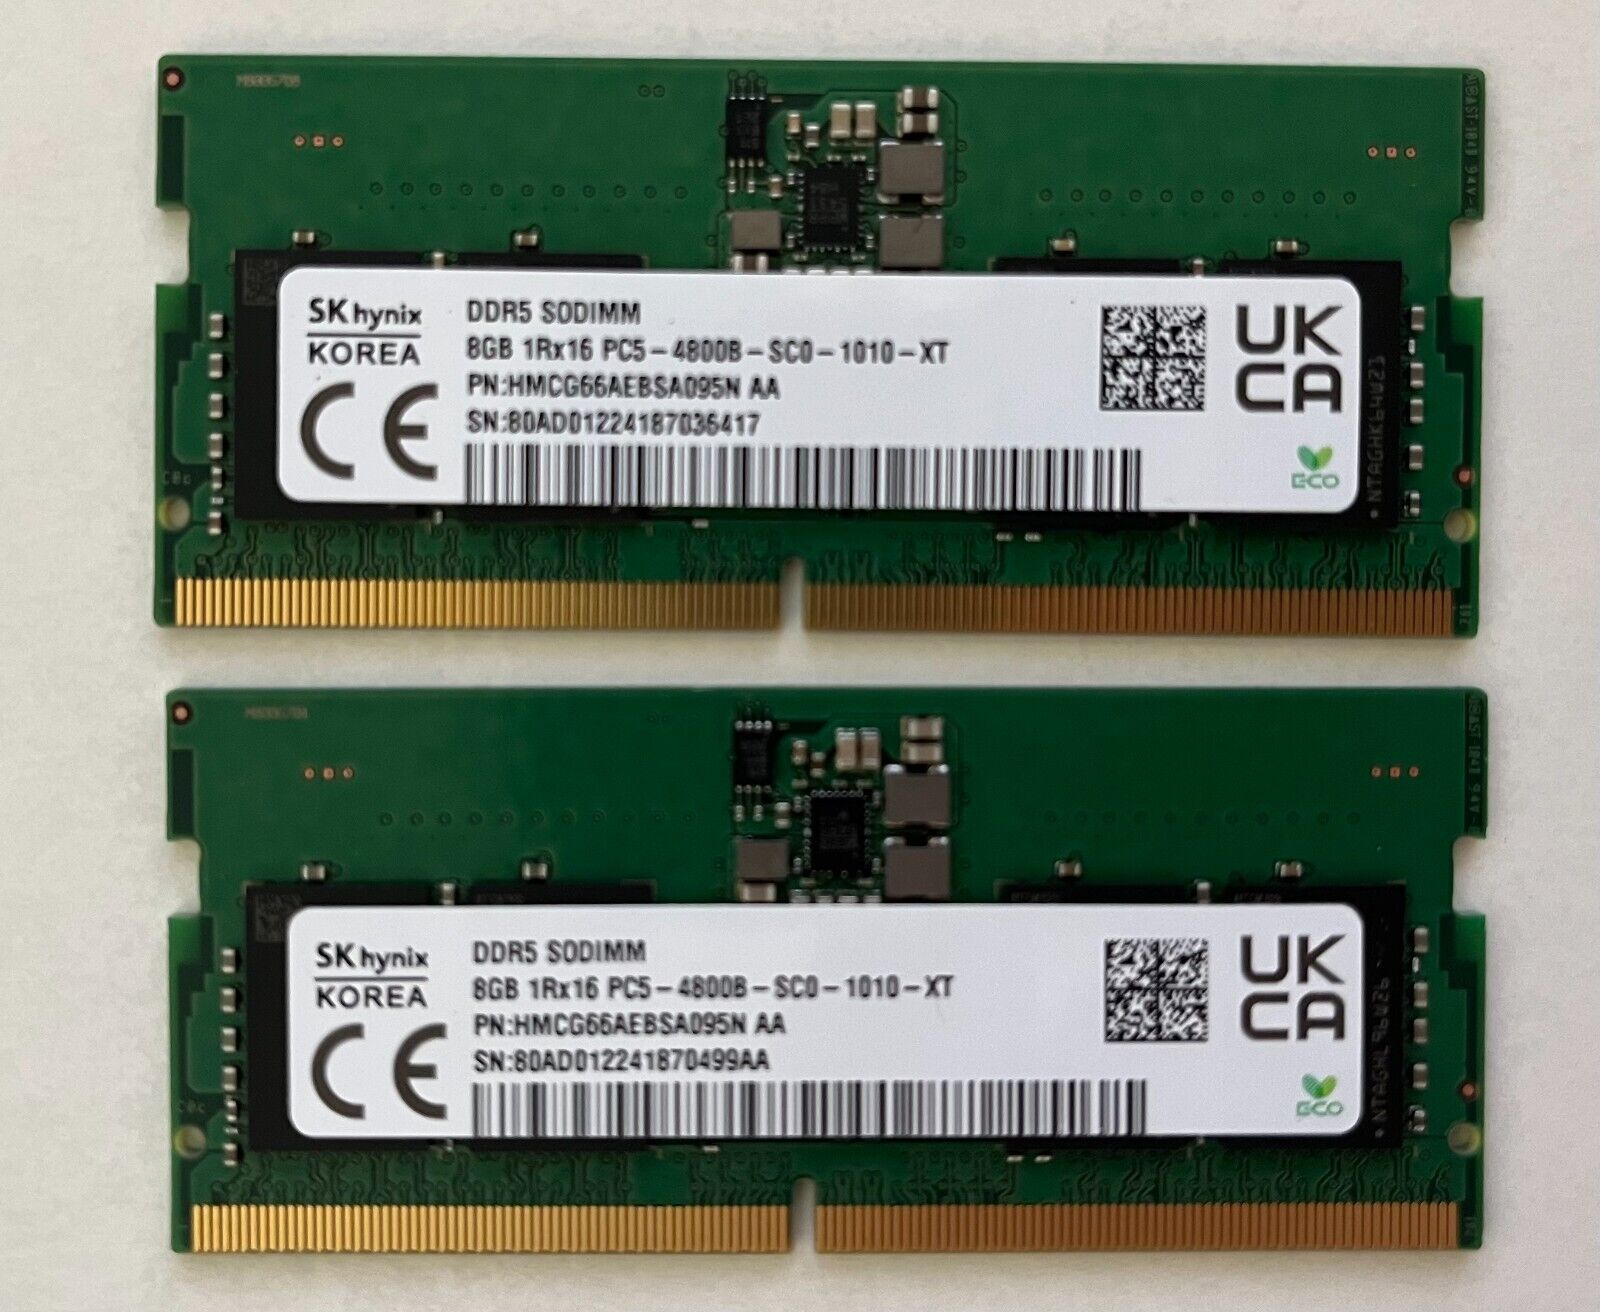 SK Hynix 16GB (8GBx2) DDR5 SODIMM 4800MHz PC5-4800 HMCG66AEBSA095N AA Laptop